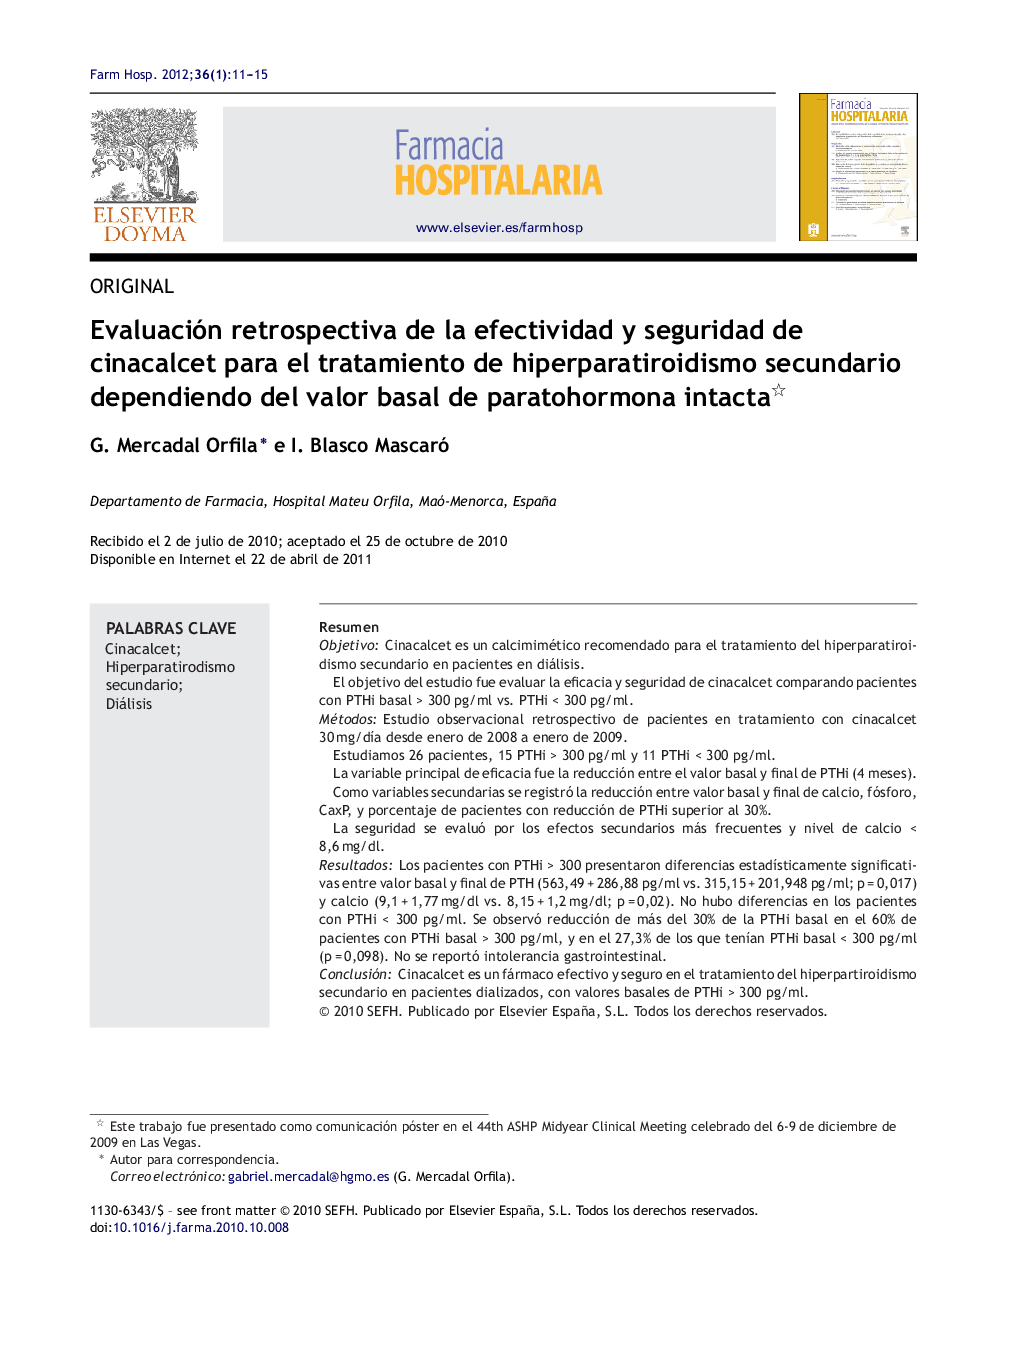 Evaluación retrospectiva de la efectividad y seguridad de cinacalcet para el tratamiento de hiperparatiroidismo secundario dependiendo del valor basal de paratohormona intacta